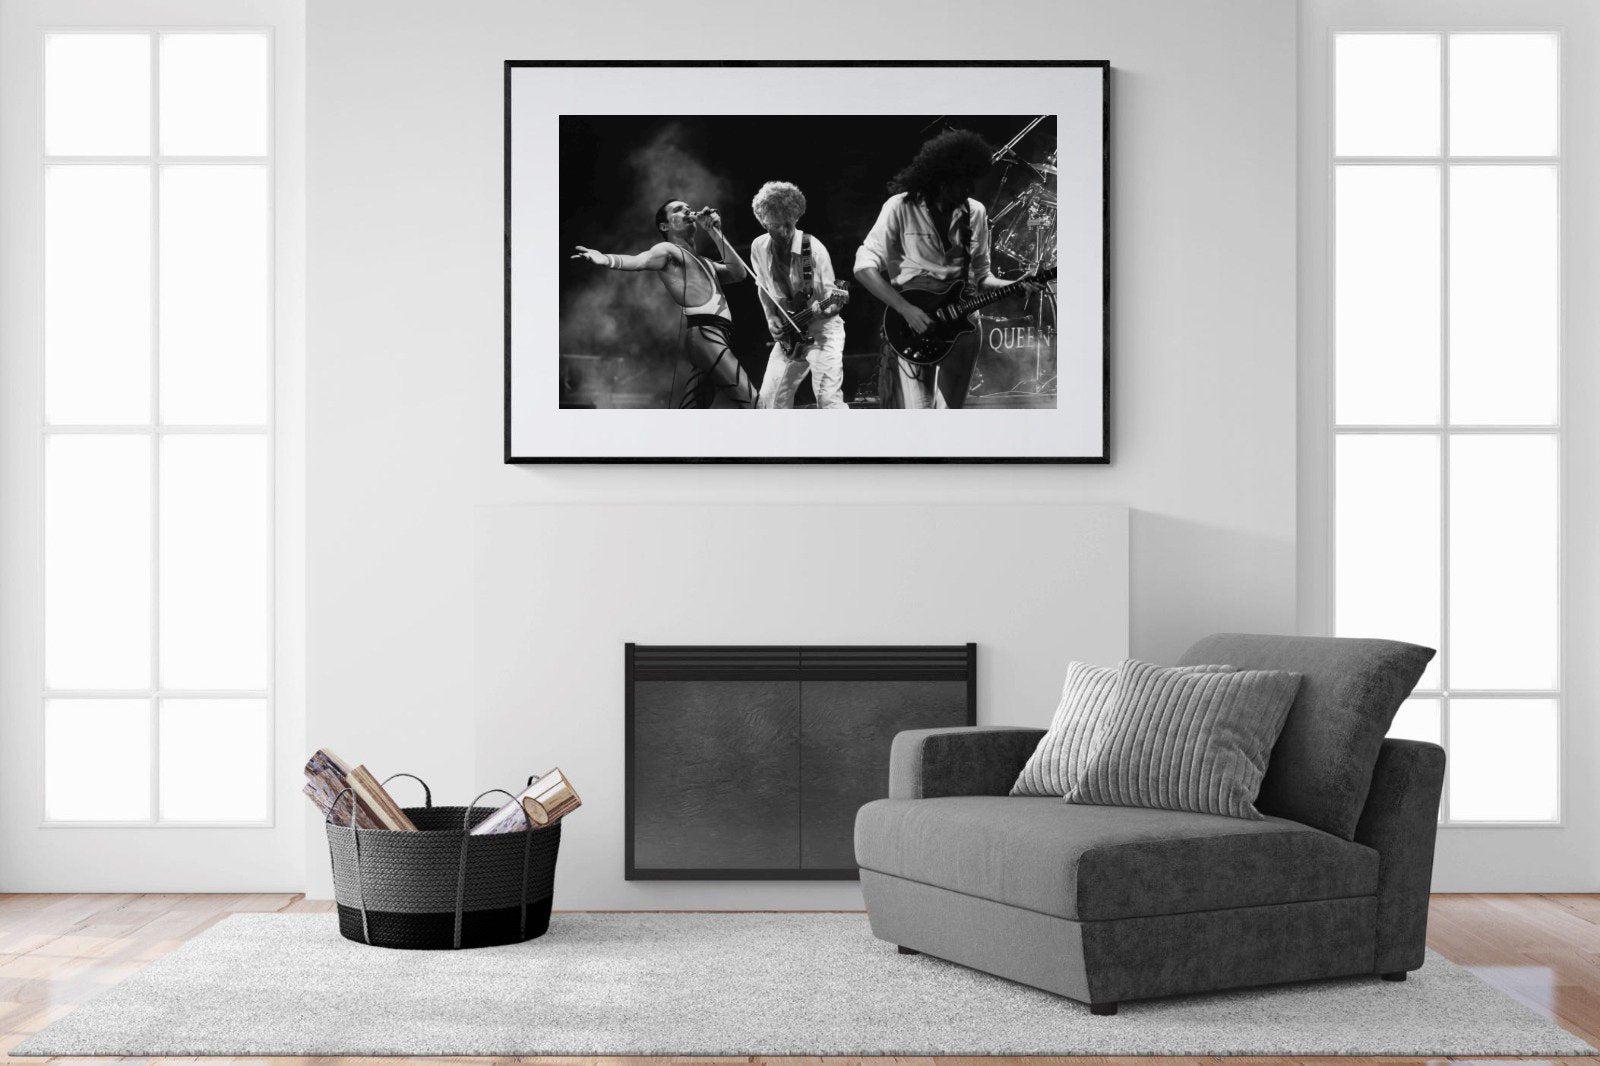 Queen-Wall_Art-150 x 100cm-Framed Print-Black-Pixalot